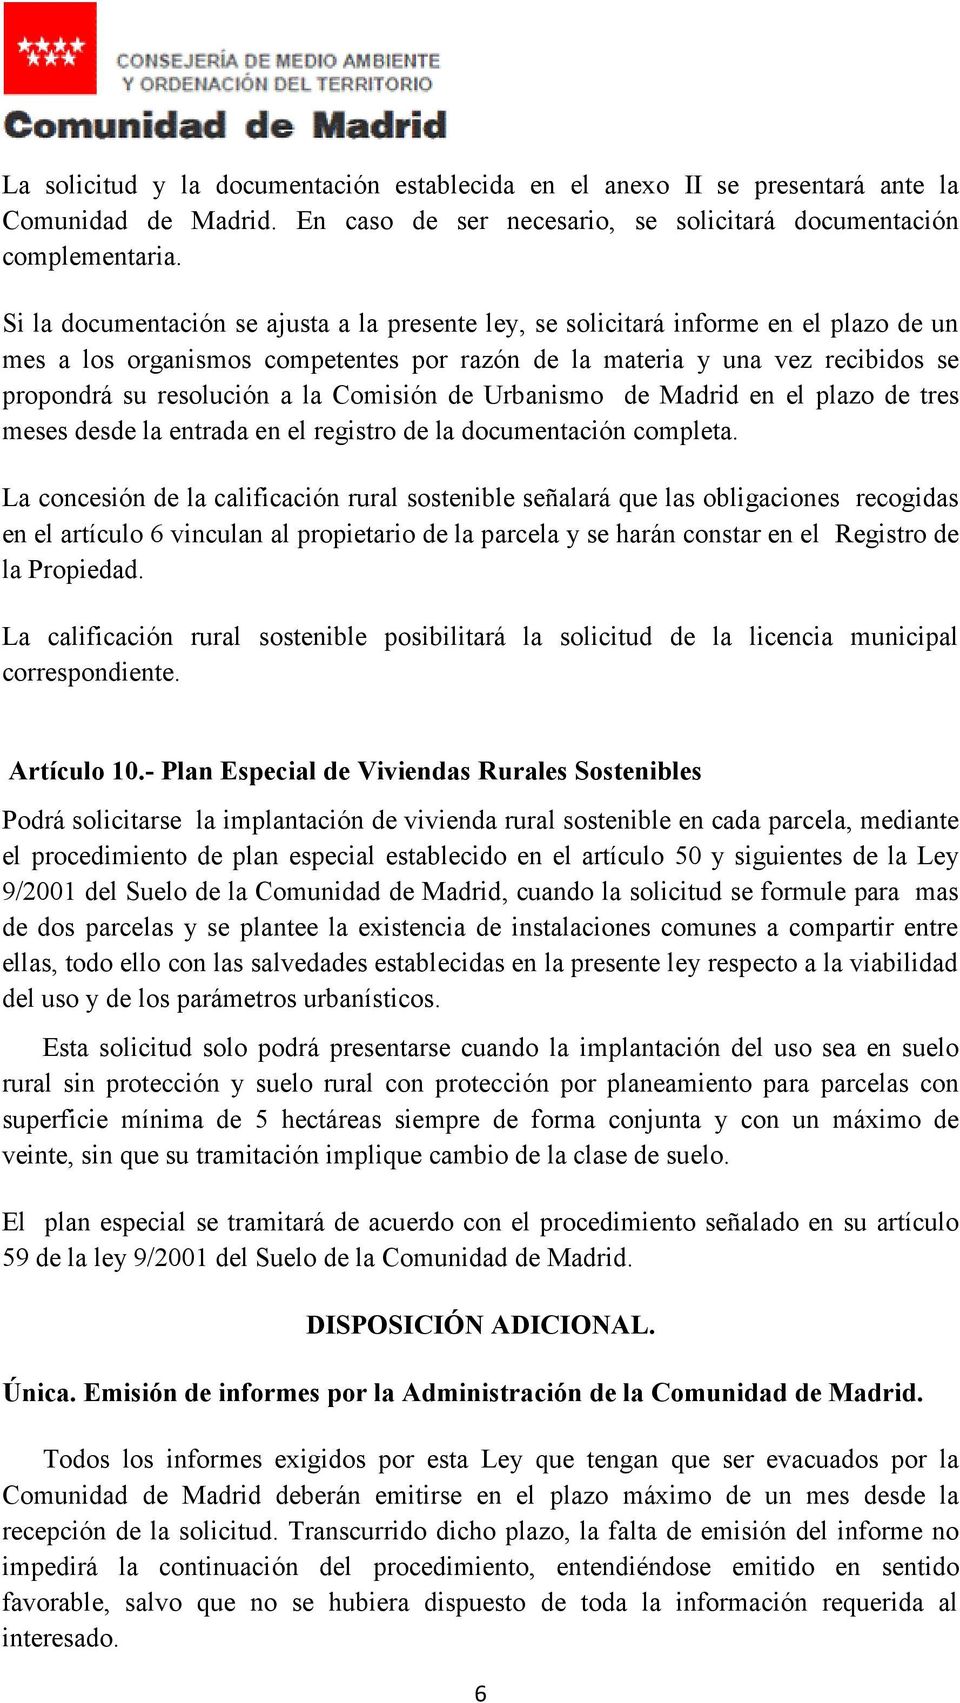 Comisión de Urbanismo de Madrid en el plazo de tres meses desde la entrada en el registro de la documentación completa.